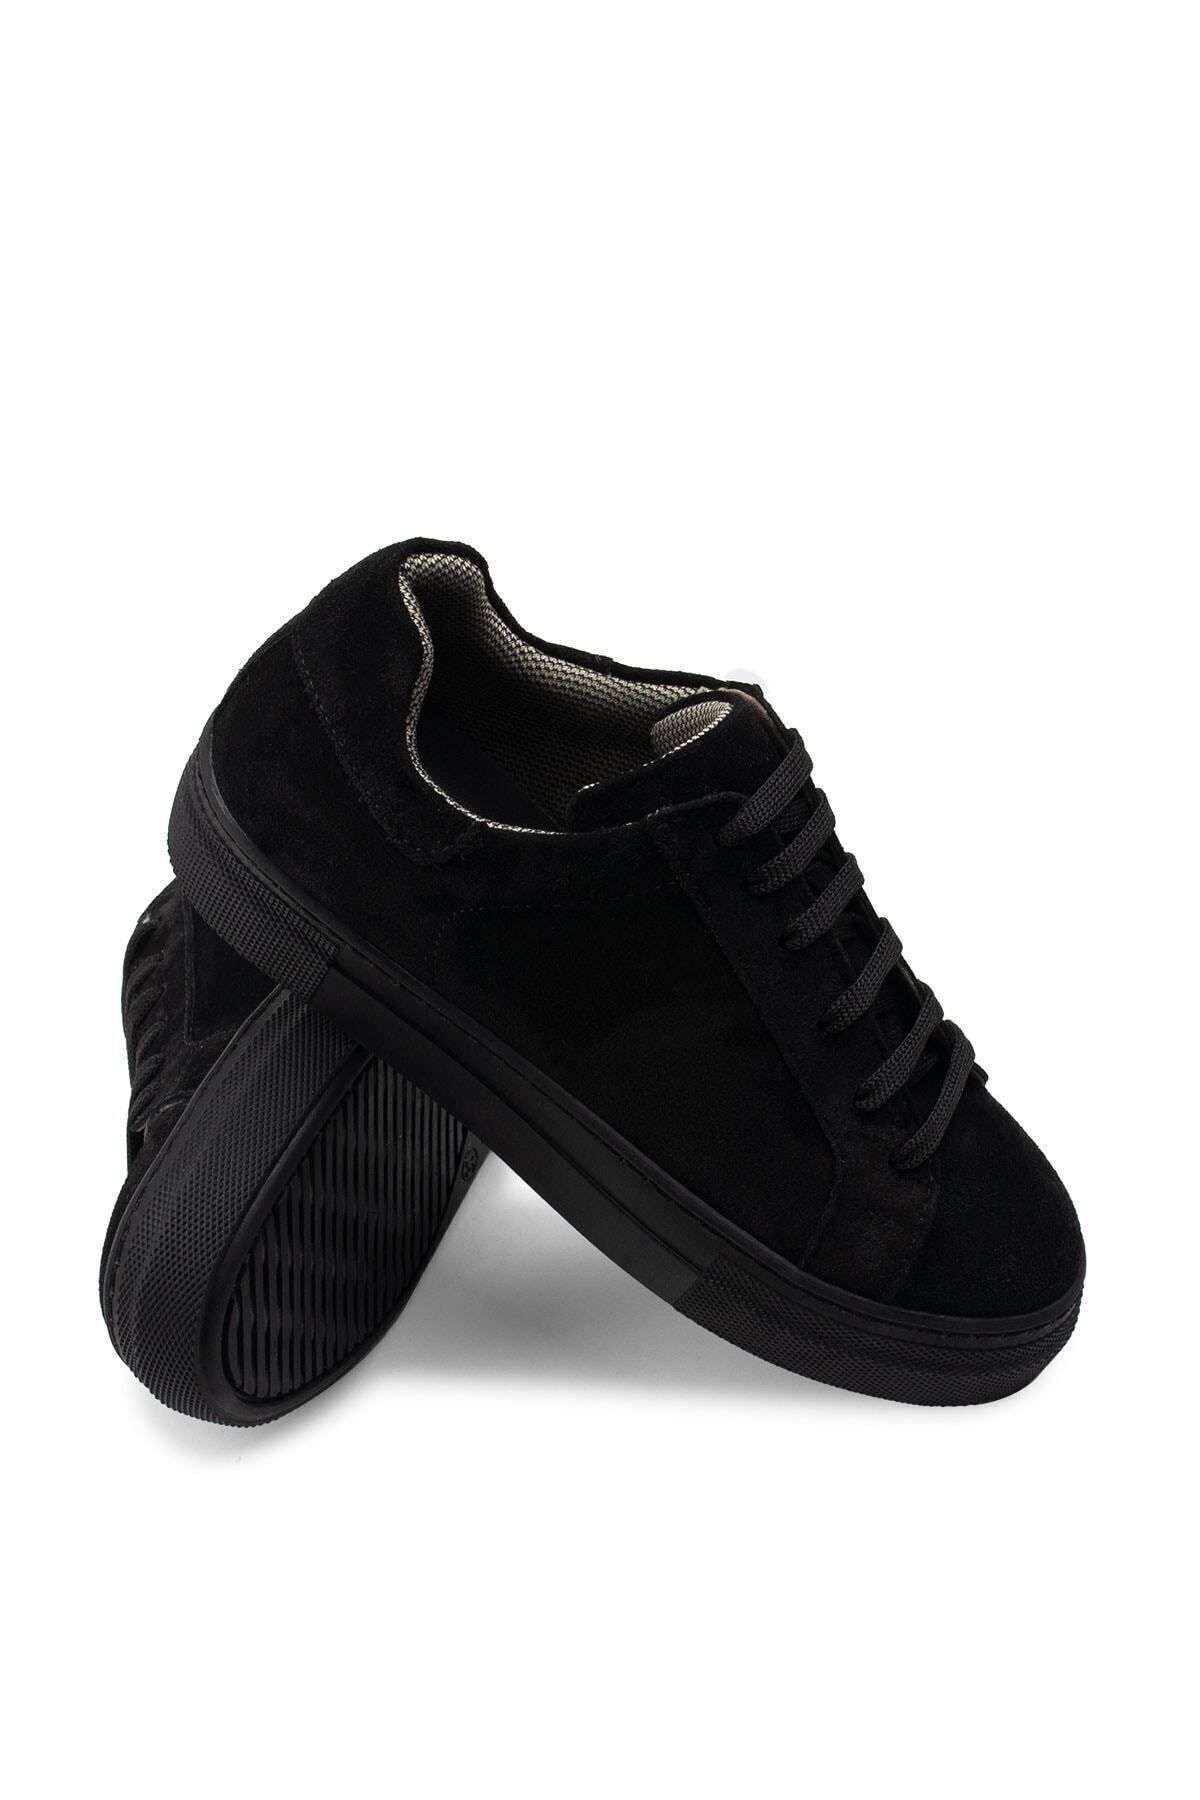 Deery Hakiki Süet Siyah Sneaker Kadın Ayakkabı